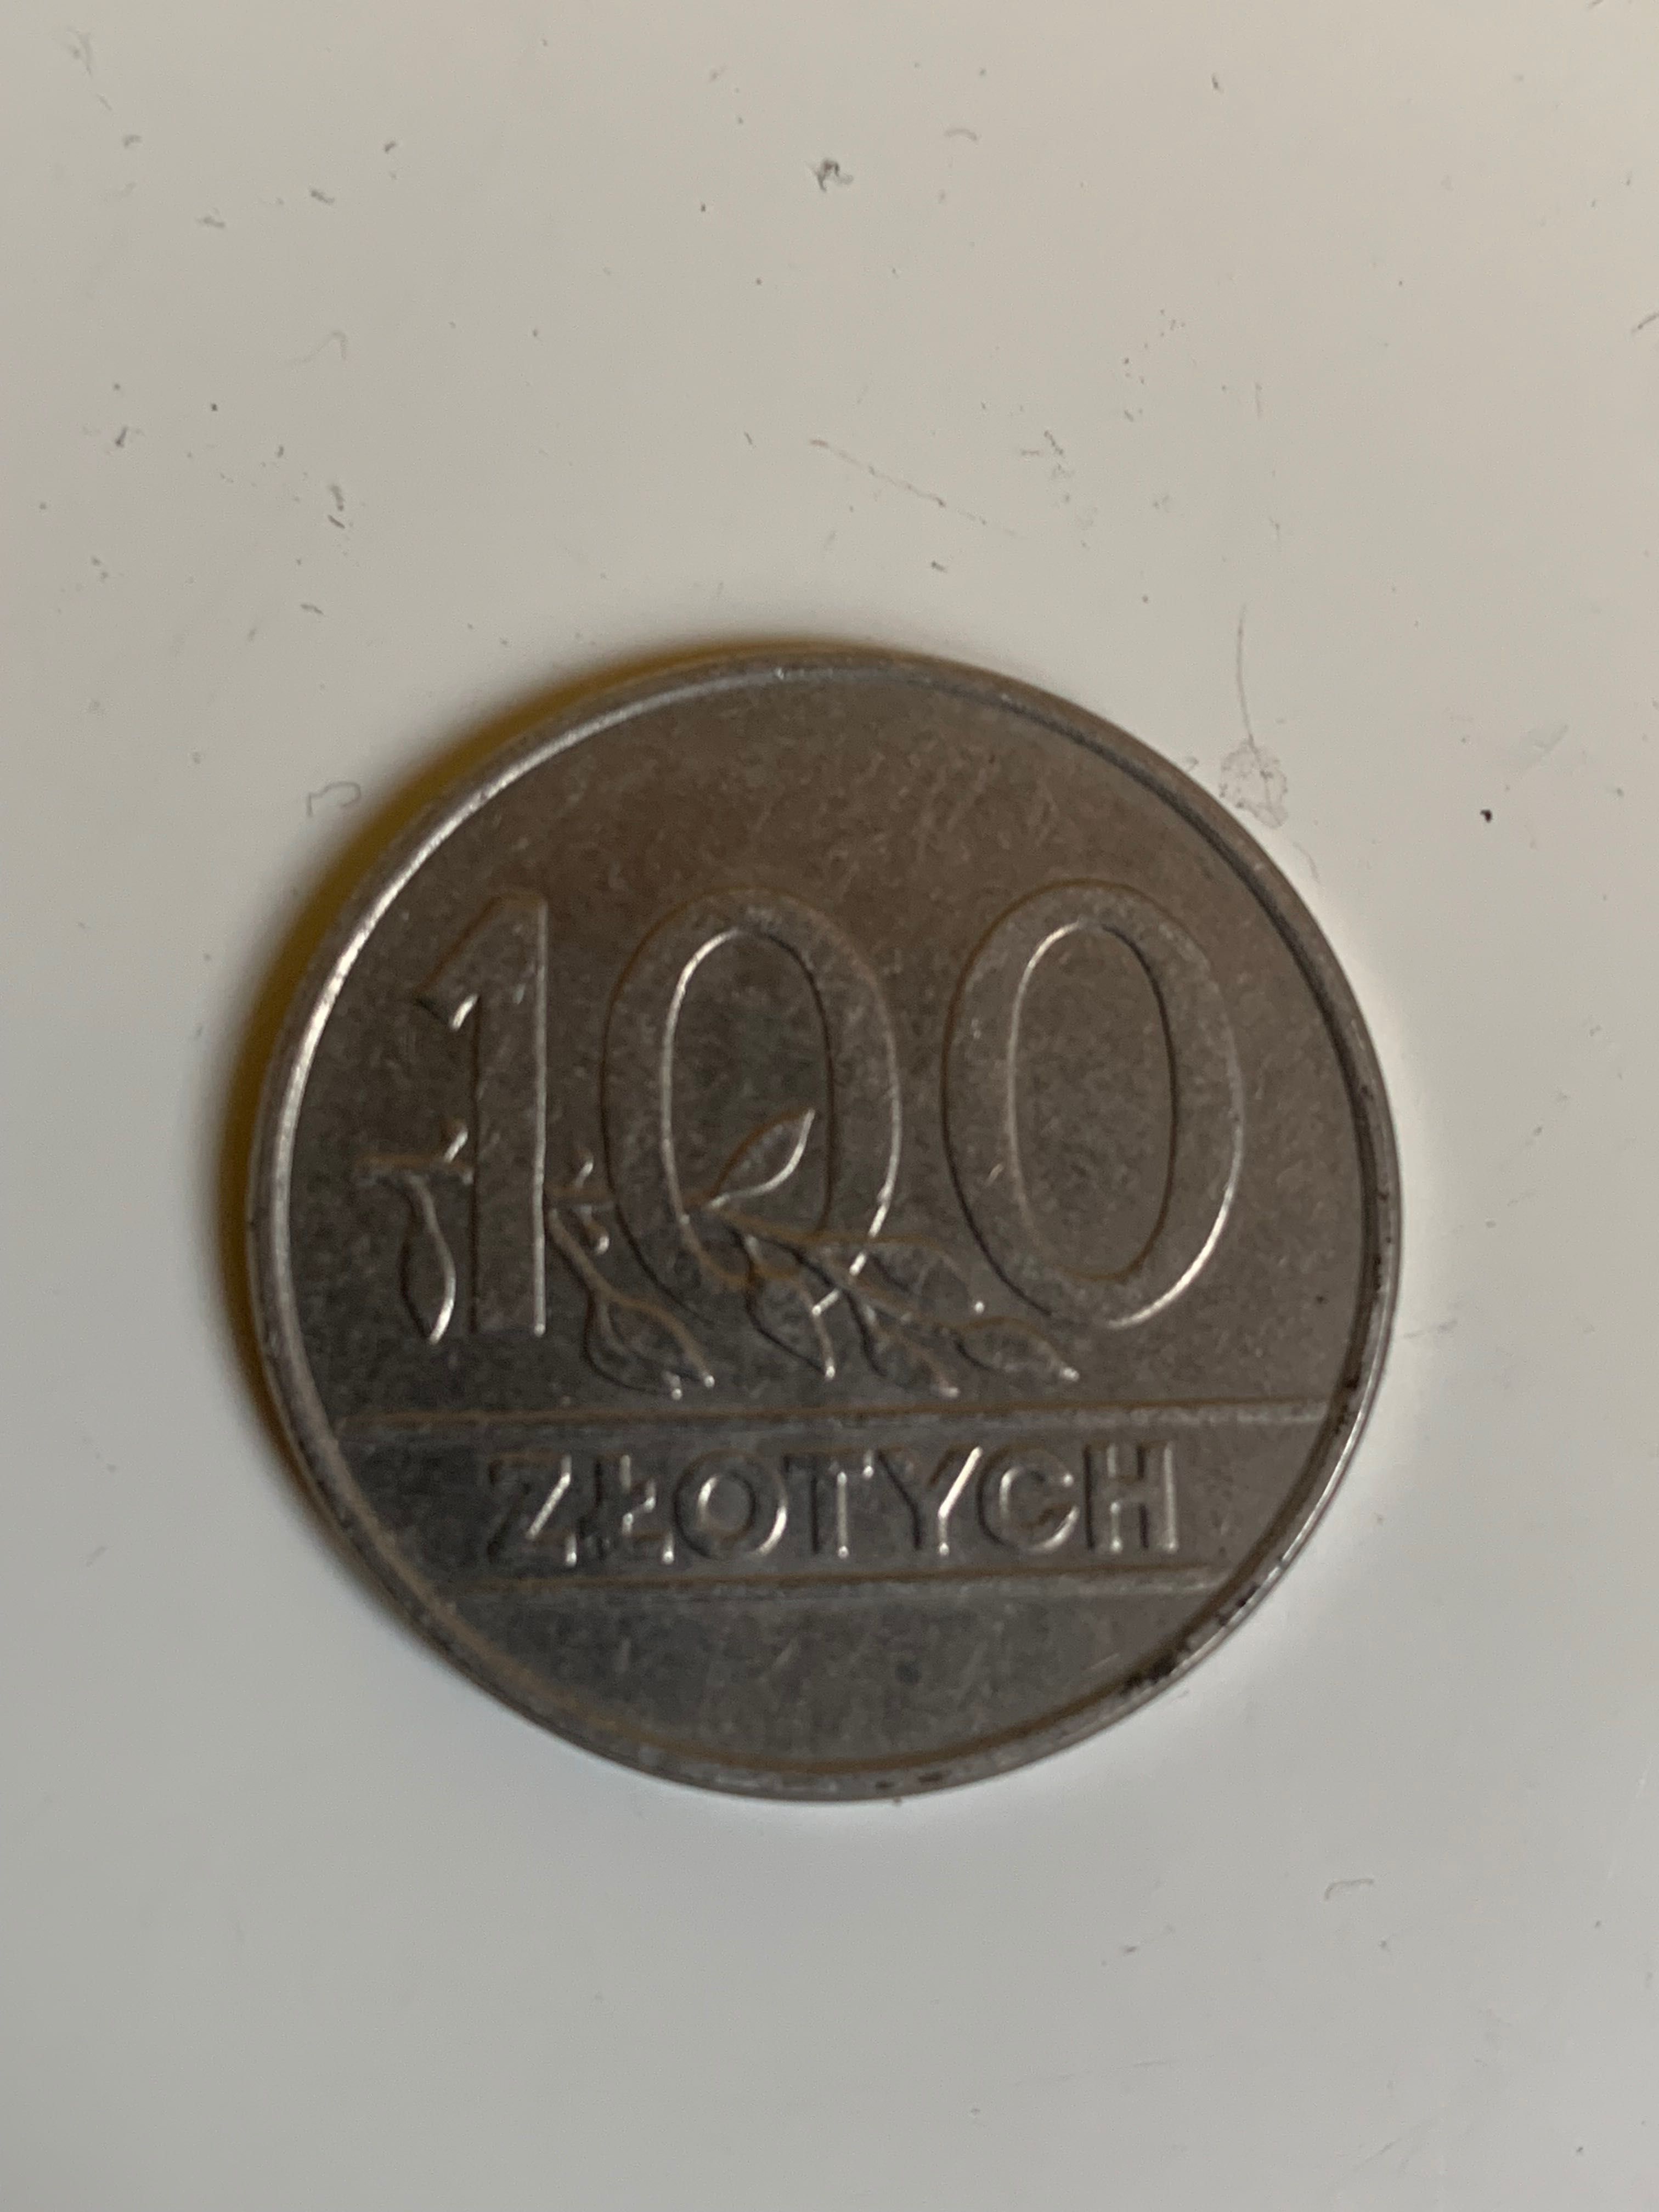 100 zł z 1990 r mennicze